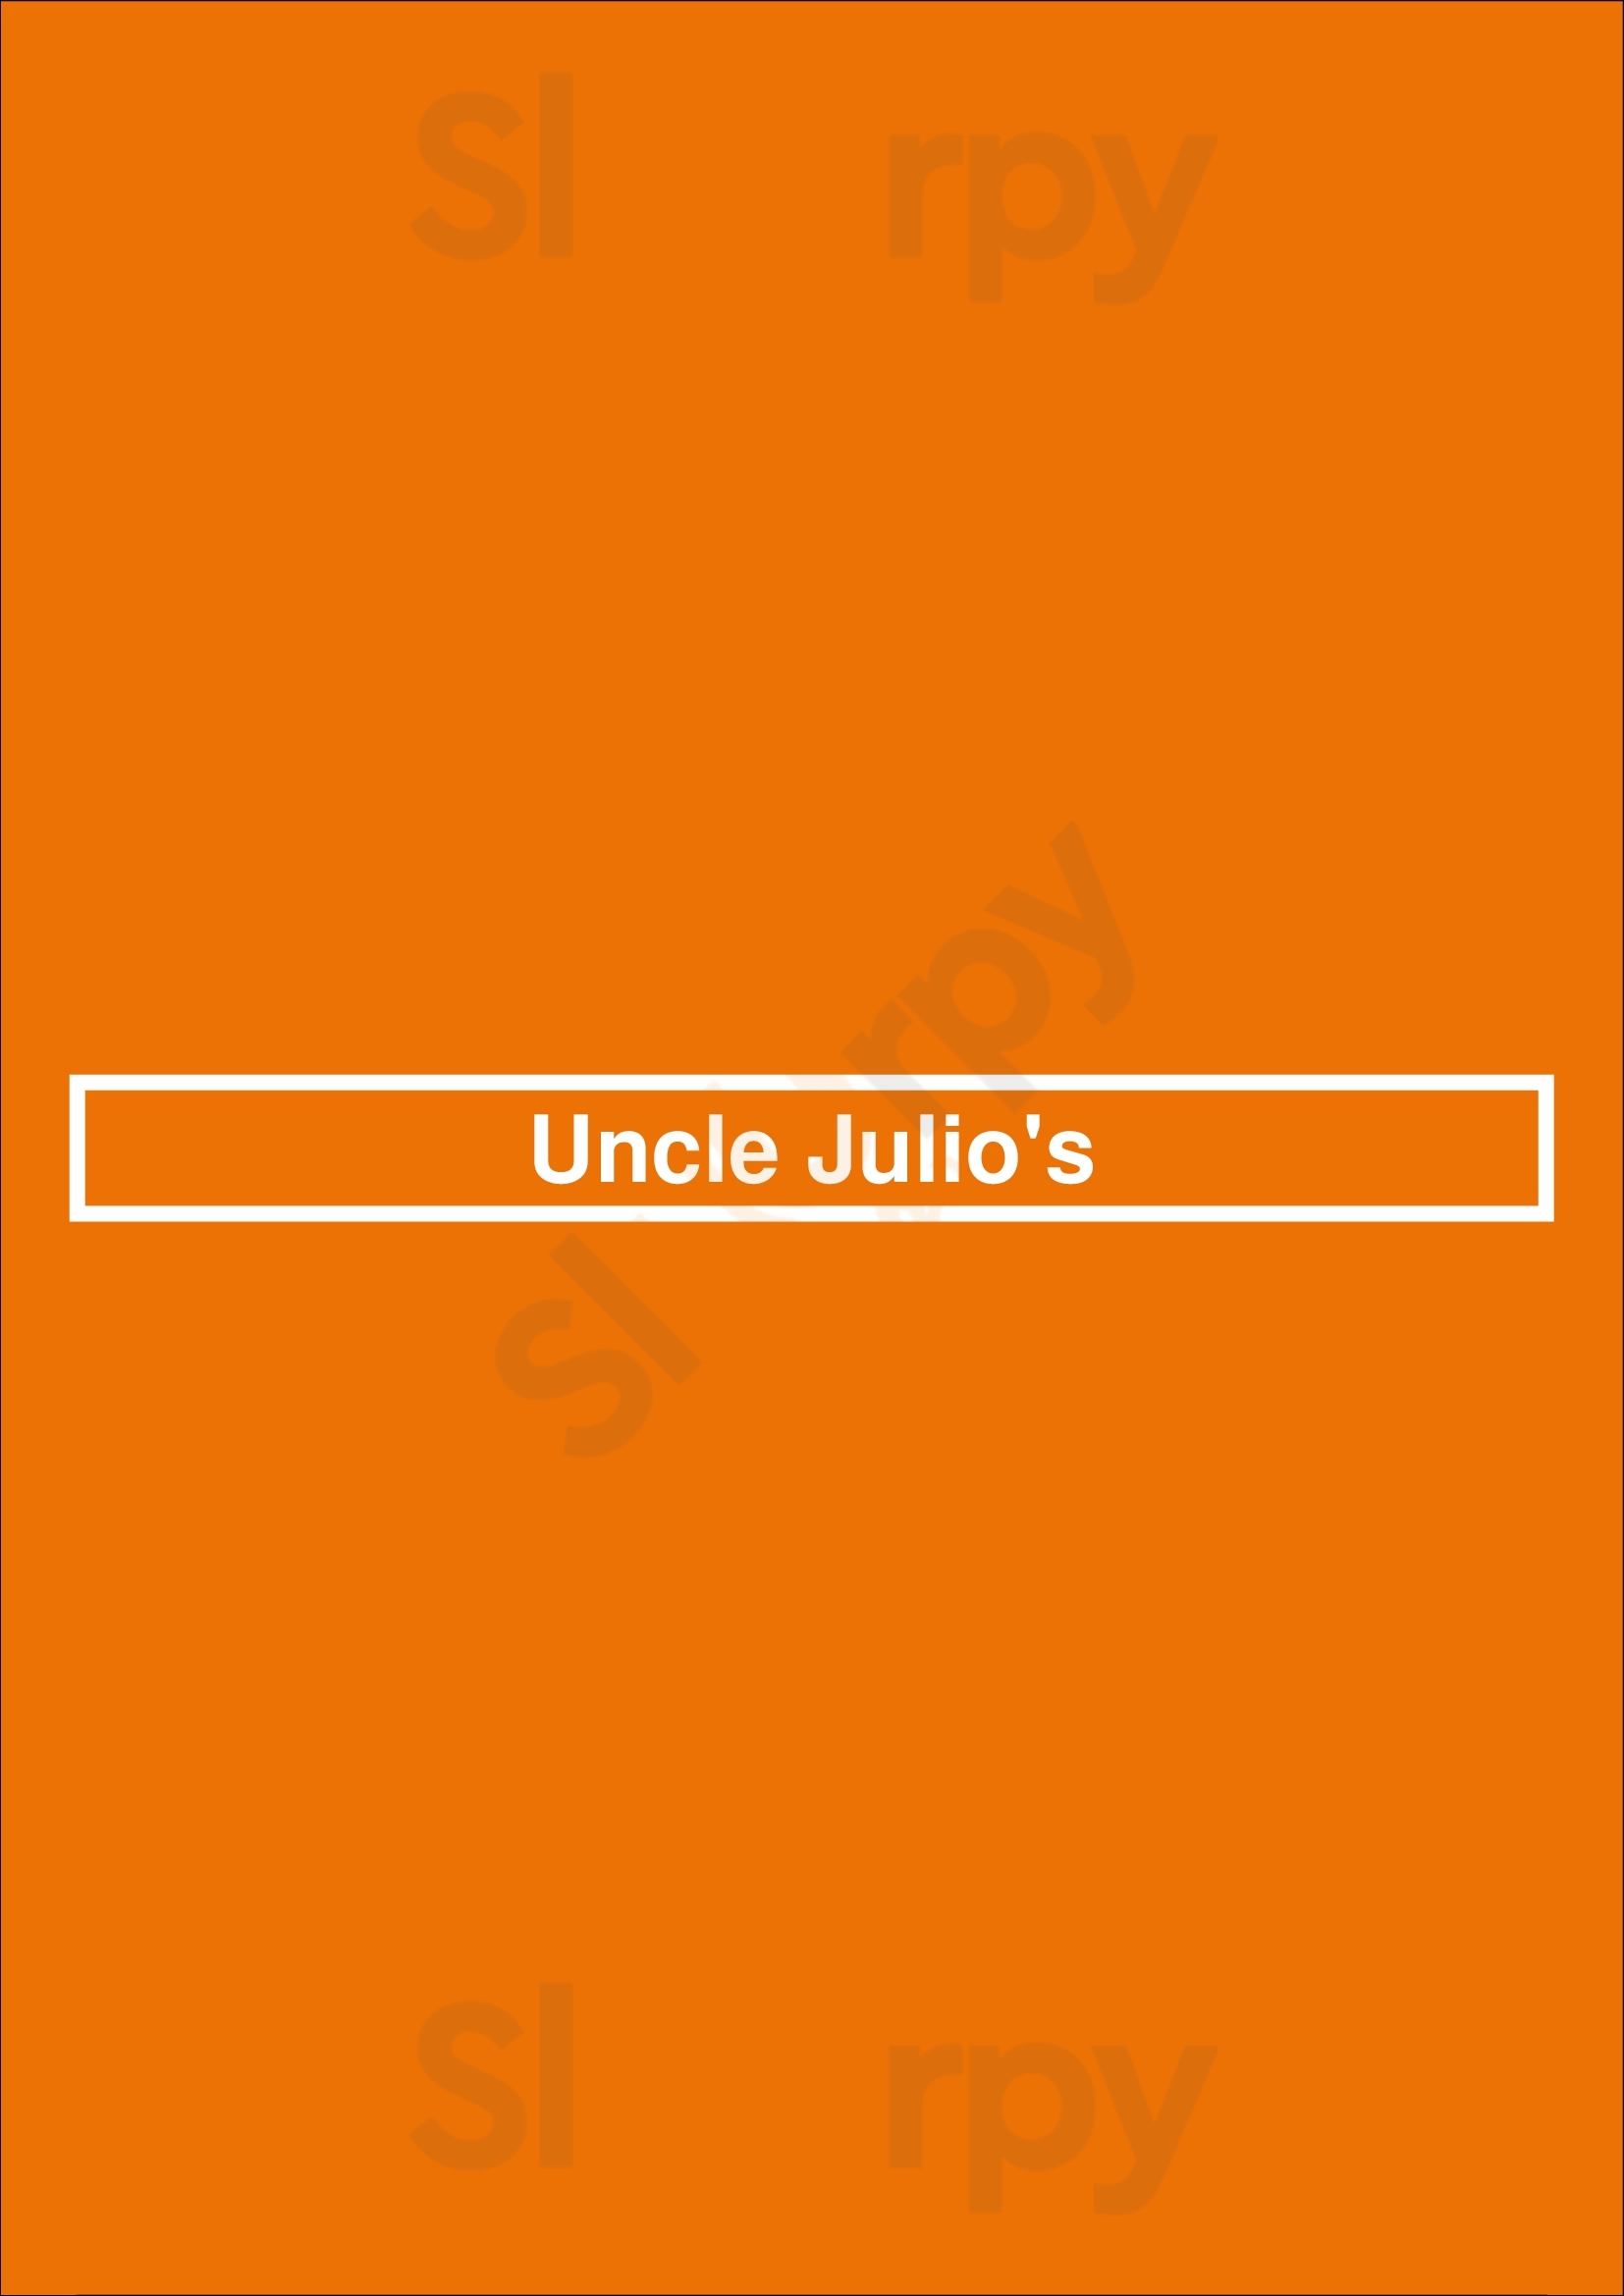 Uncle Julio's Bethesda Menu - 1